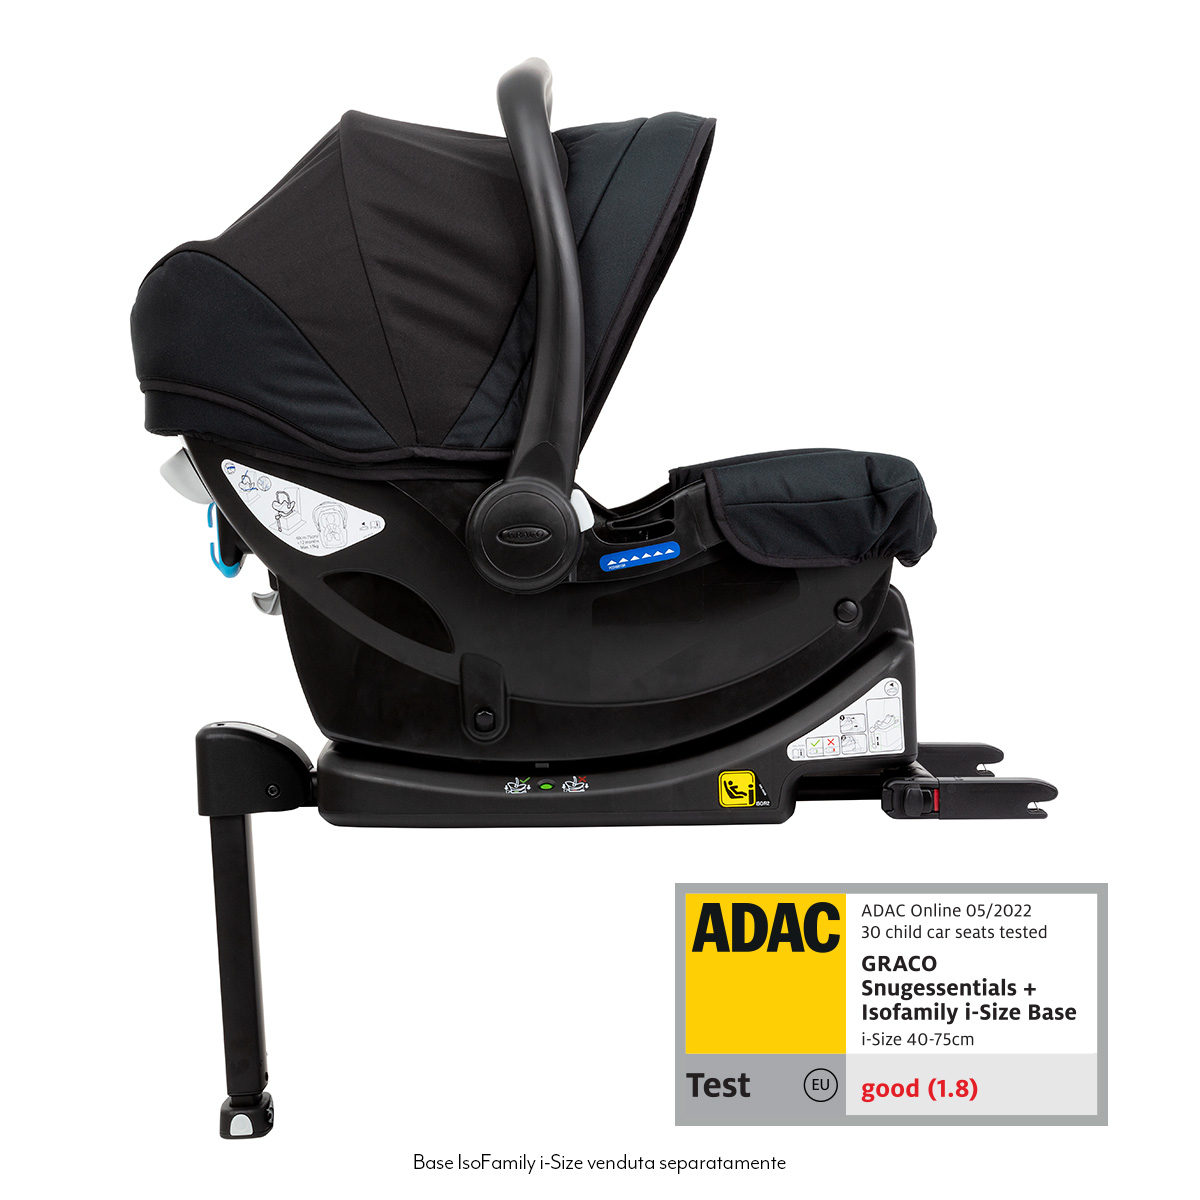 Siège auto bébé Graco SnugEssentials i-Size et base SnugRide avec un score ADAC 4 étoiles